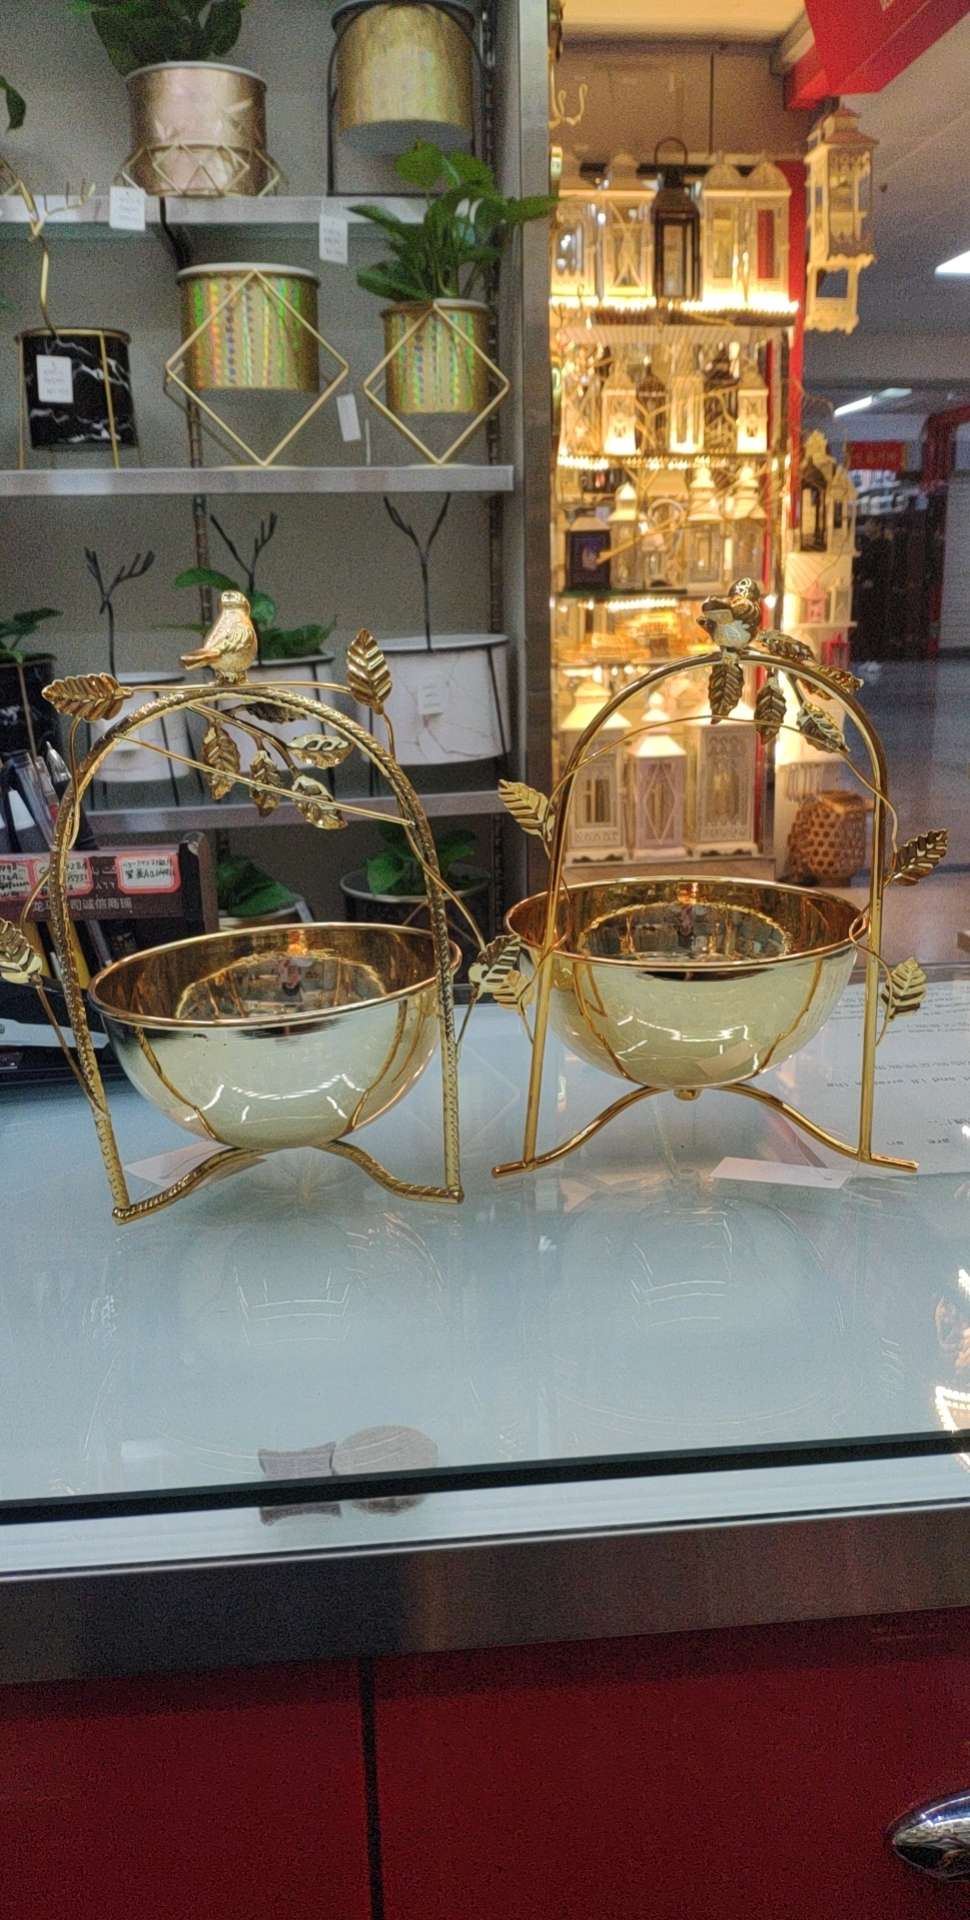 鸟巢型镀金色铁艺玻璃底托盘 欧式托盘镜子托盘餐具 家用创意日式餐盘北欧茶具套餐水果盘36